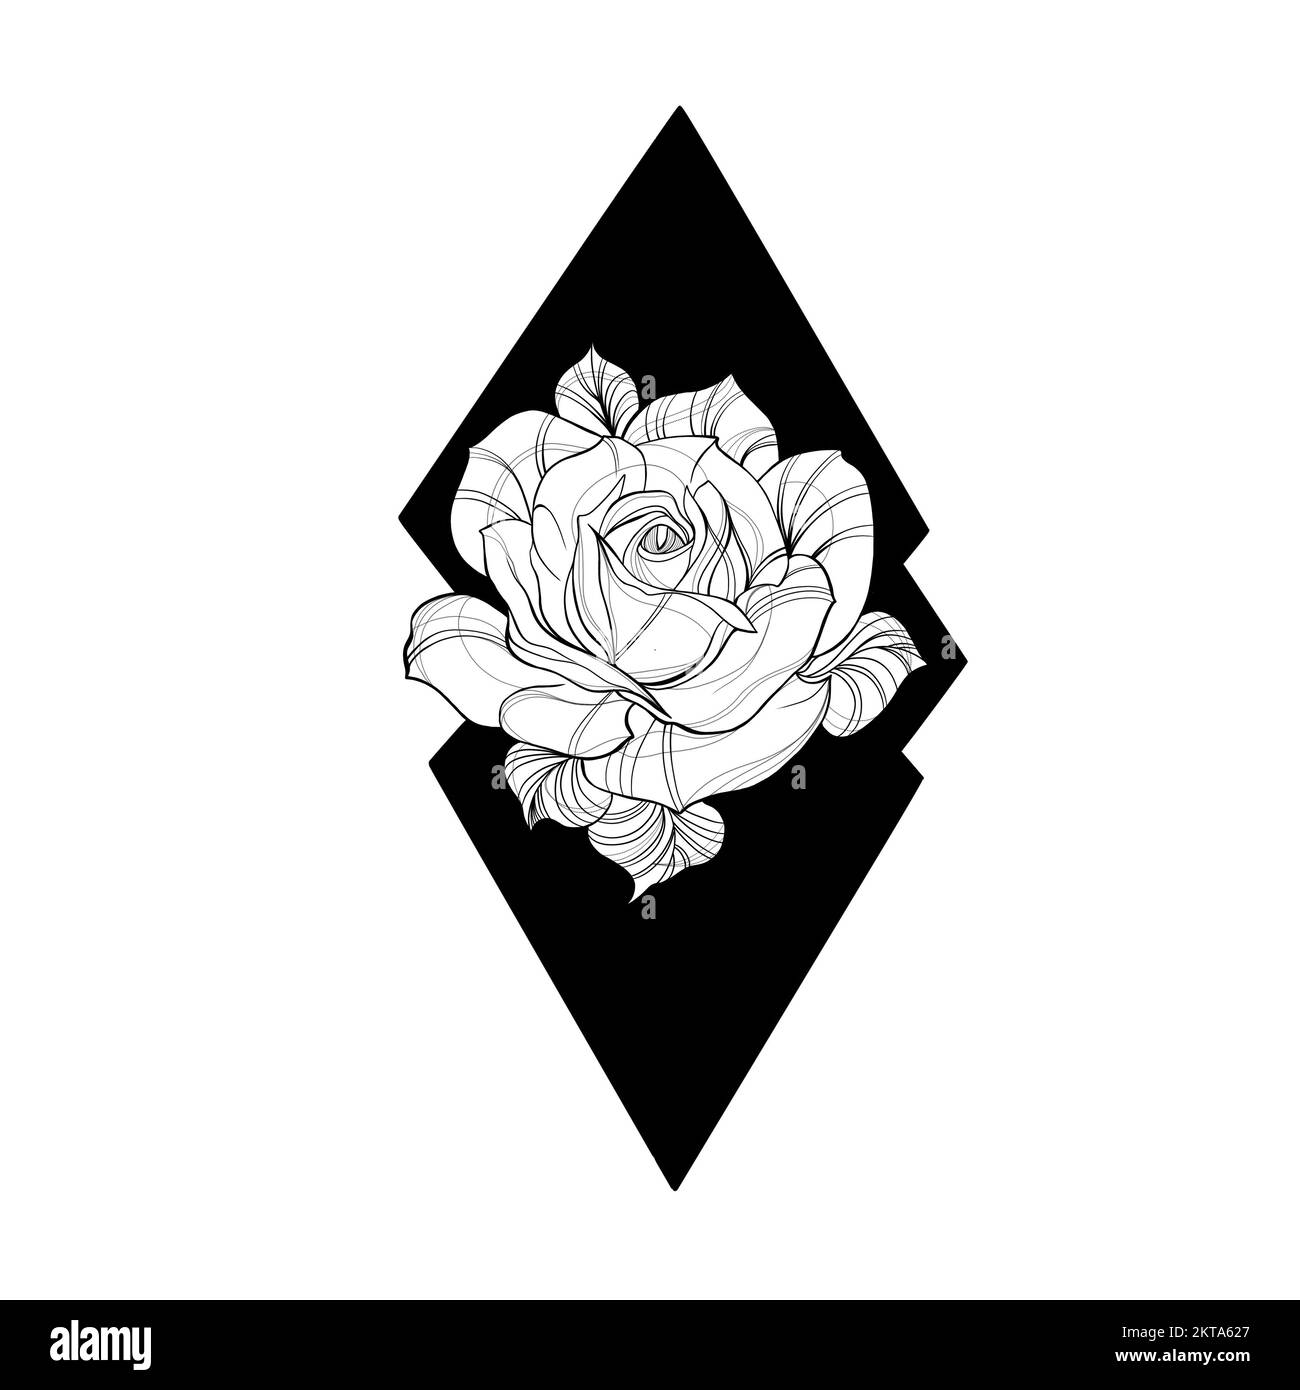 Croquis détaillé d'un tatouage de fleur de rose. Éléments décoratifs pour tatouage, carte de voeux, invitation de mariage en style gravure. Banque D'Images